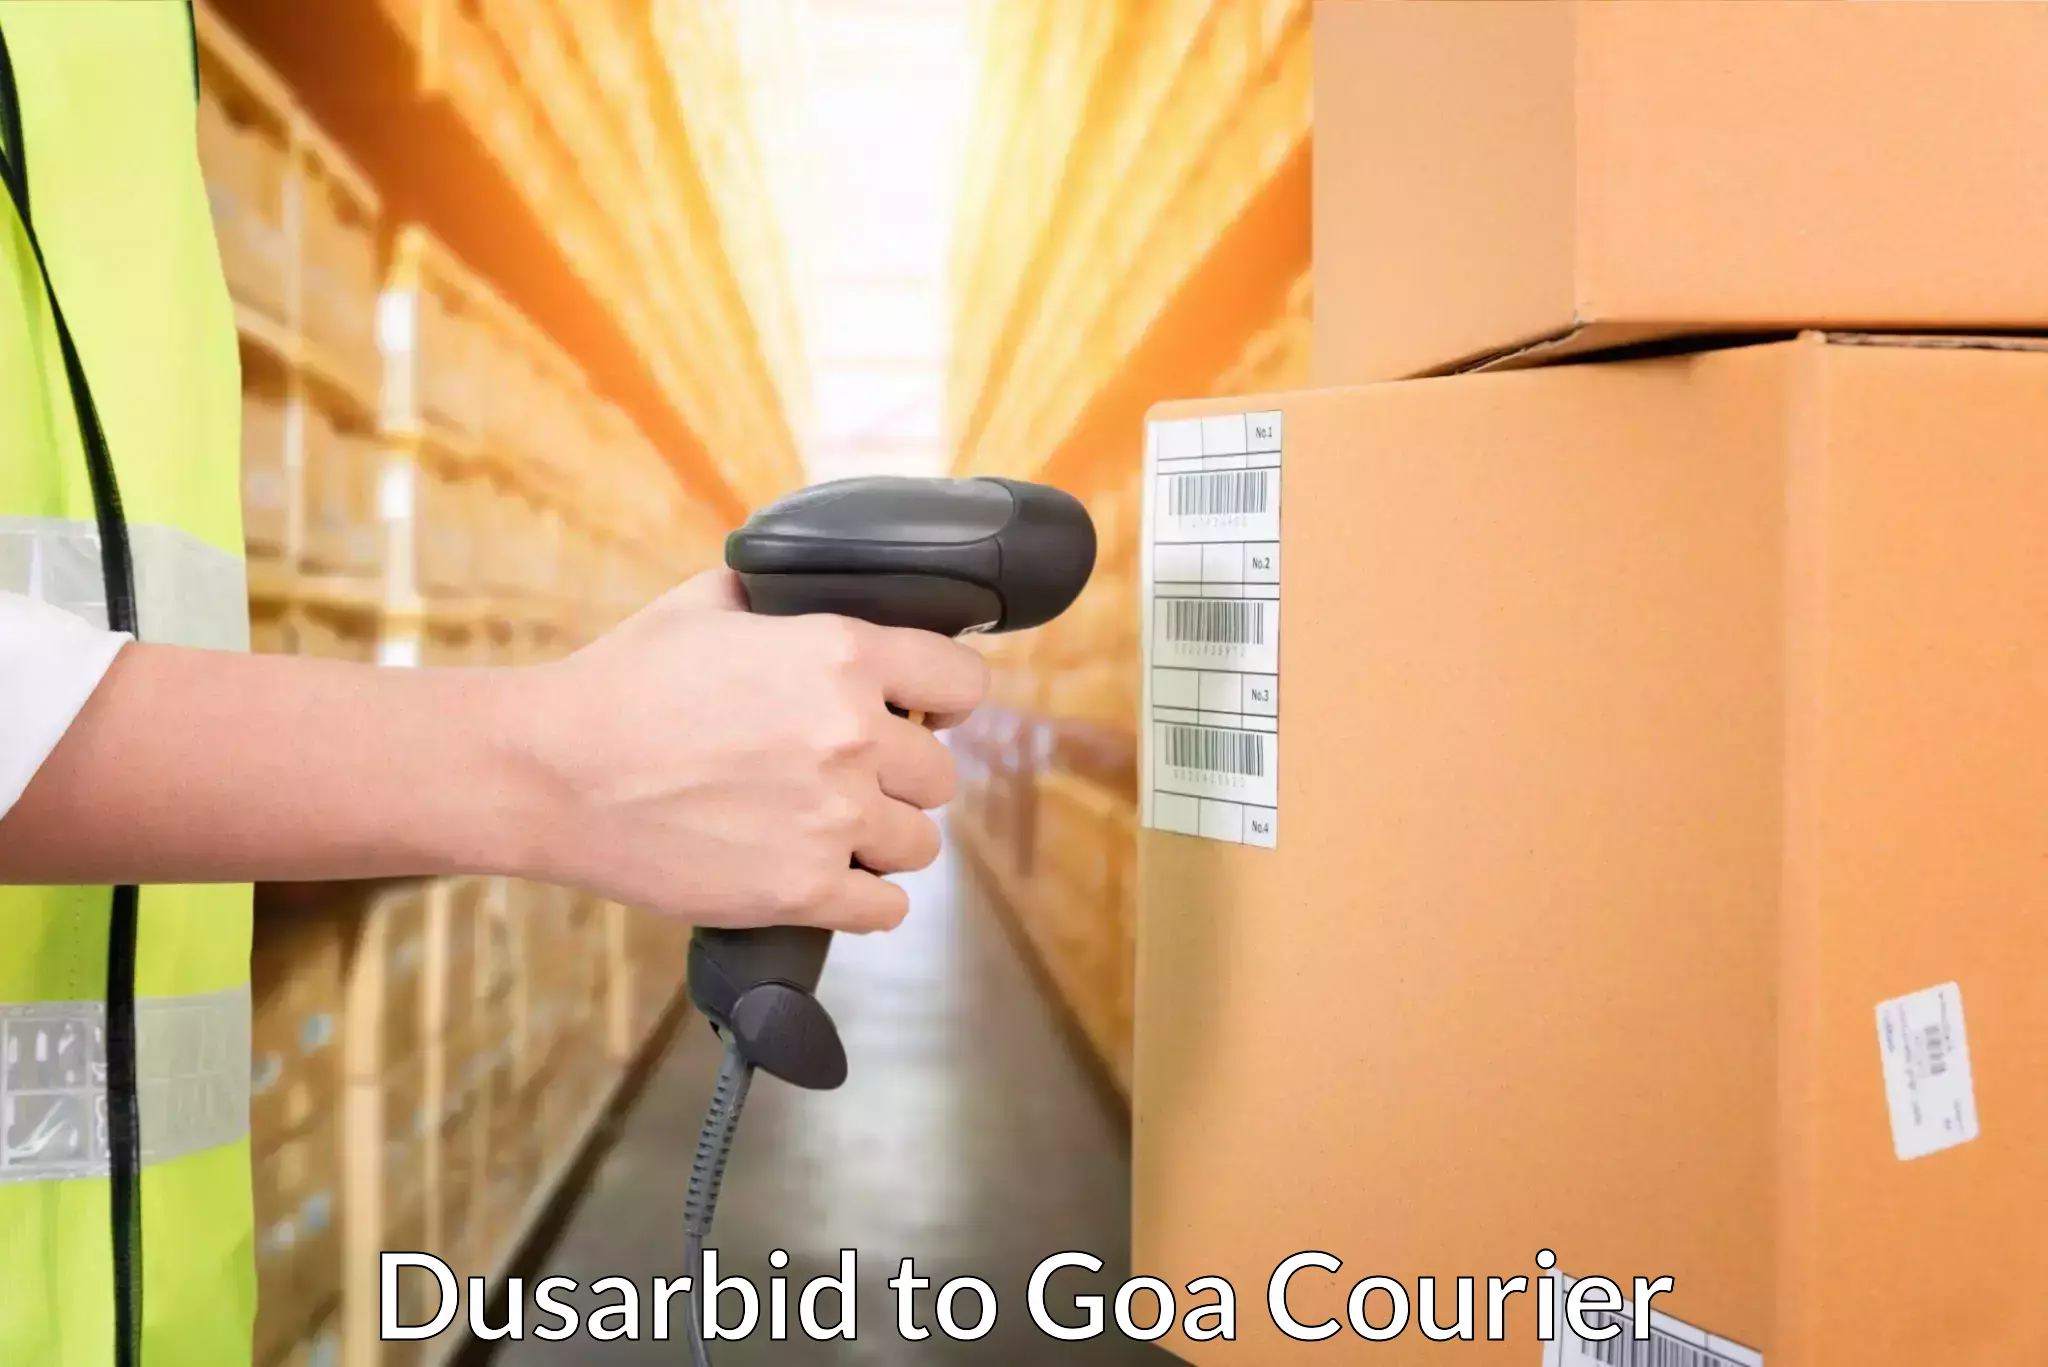 User-friendly courier app Dusarbid to Mormugao Port